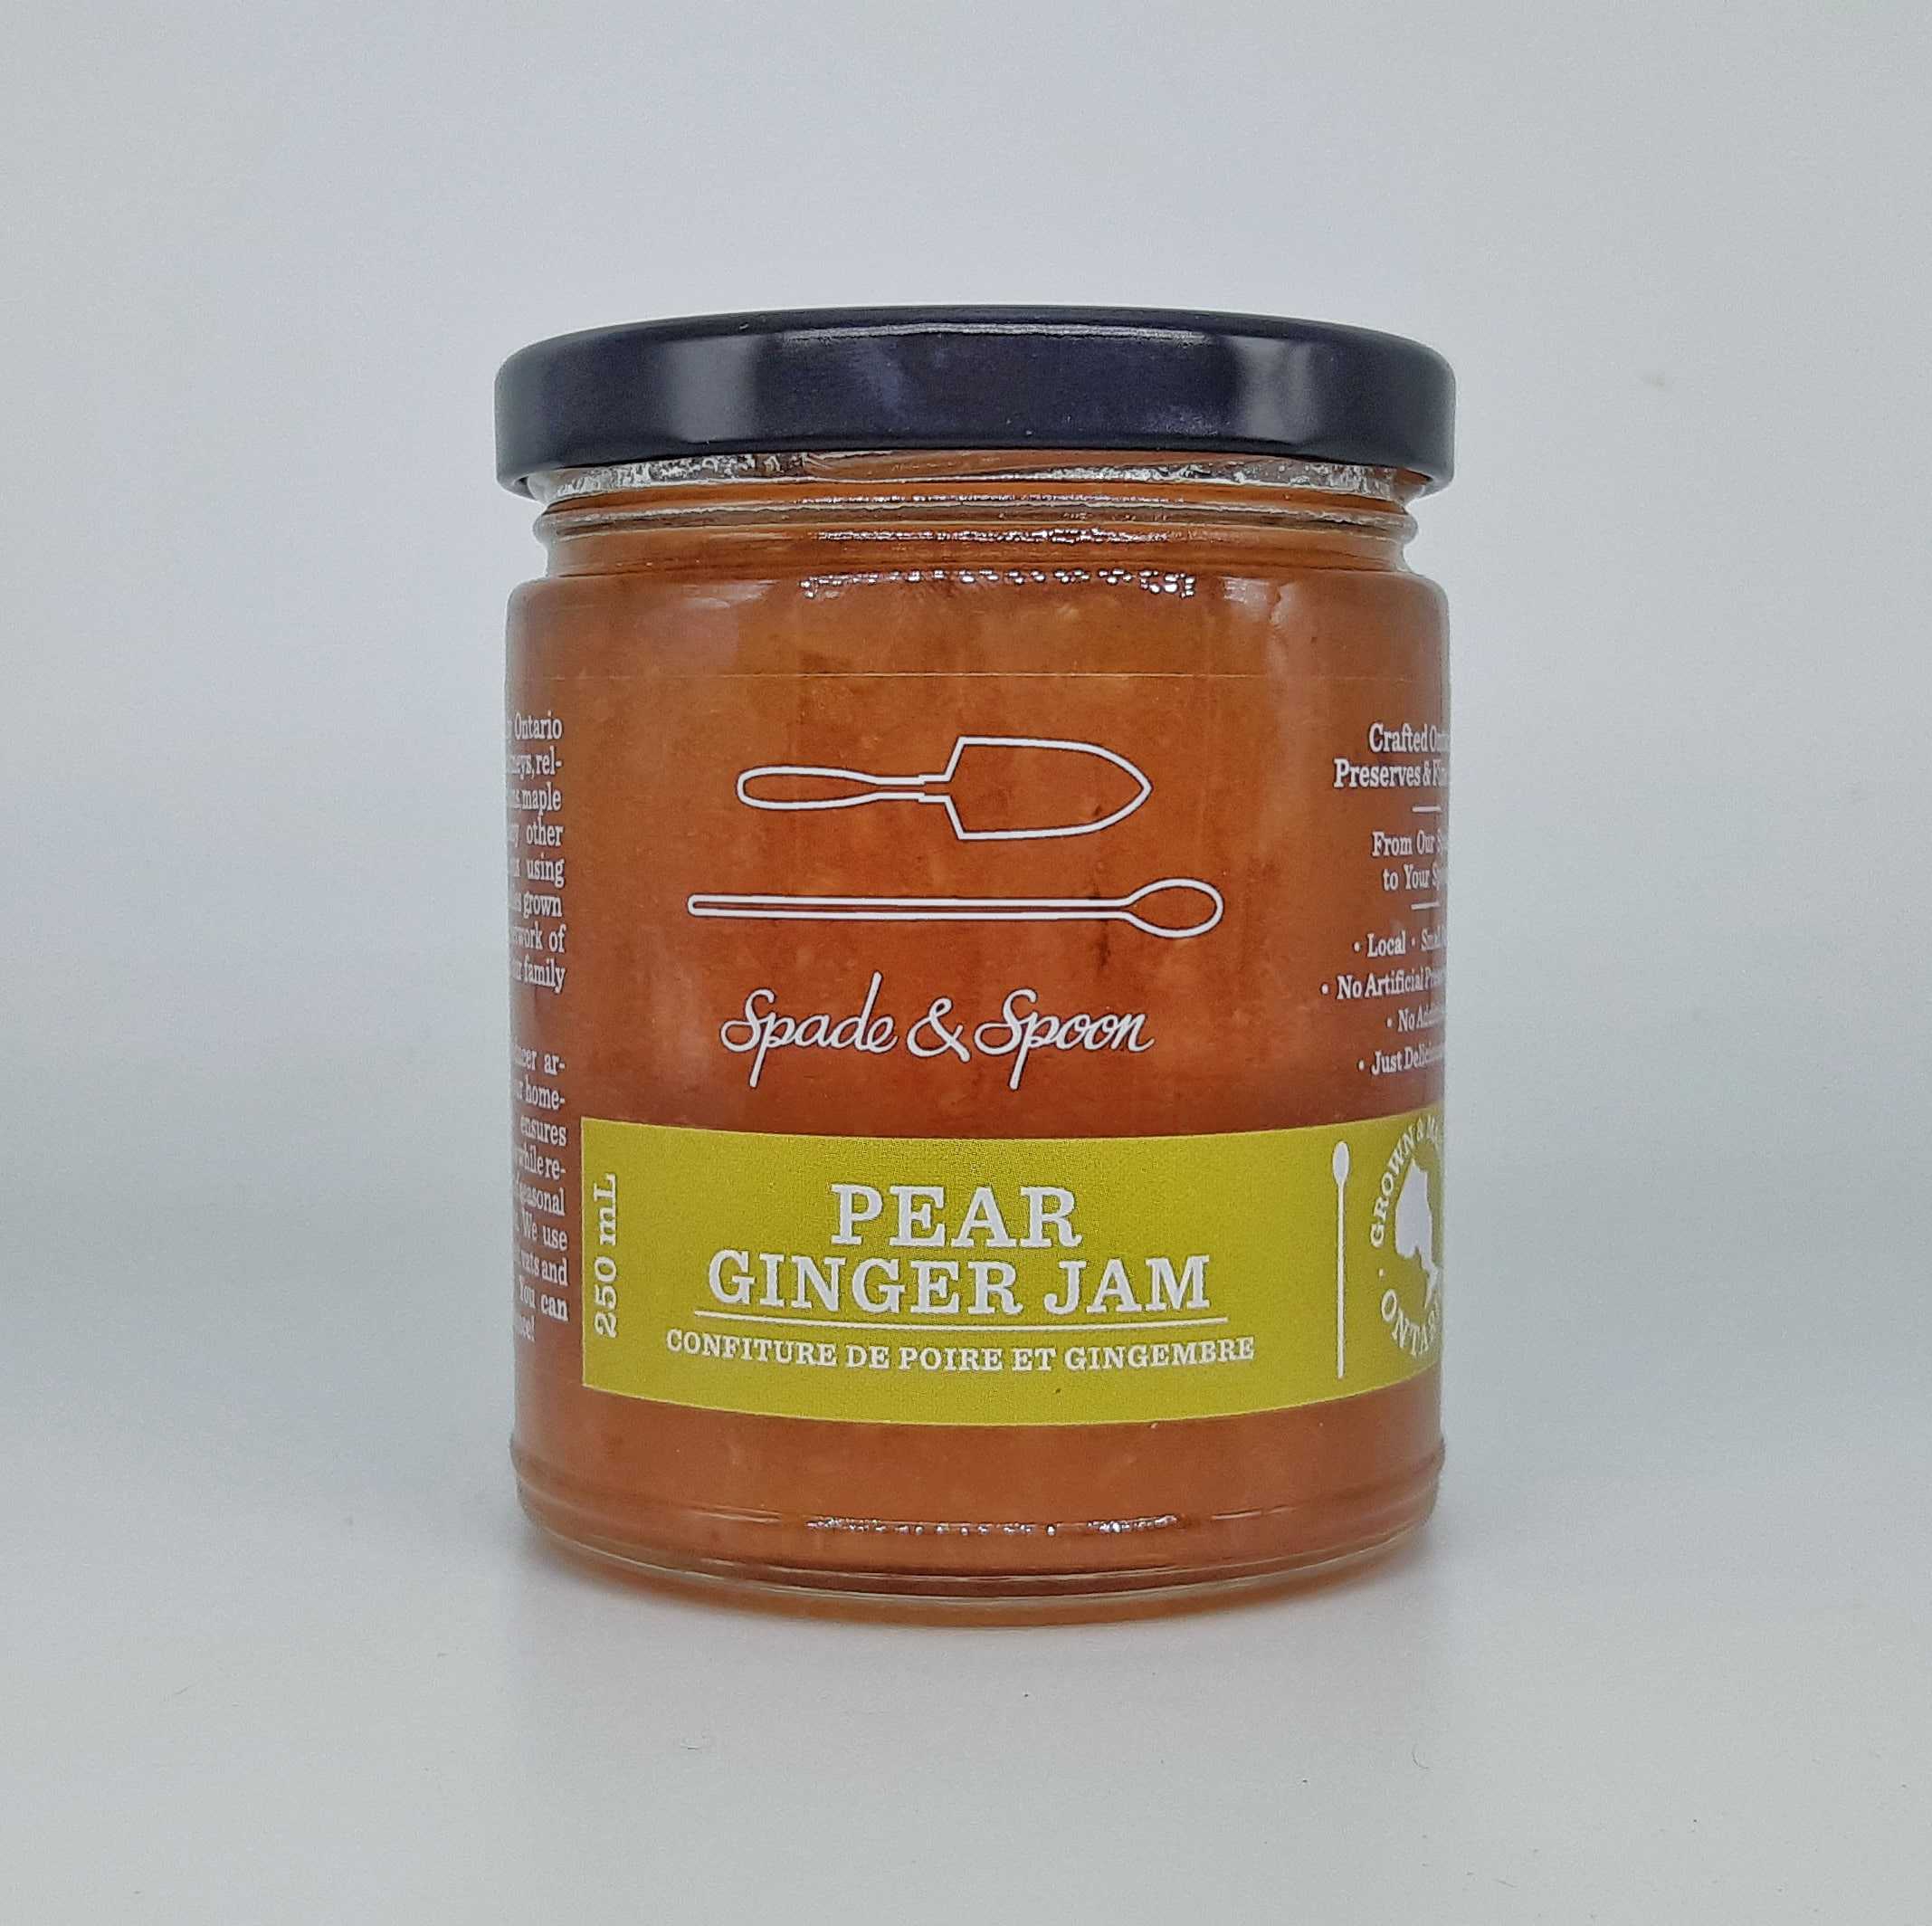 Pear ginger jam